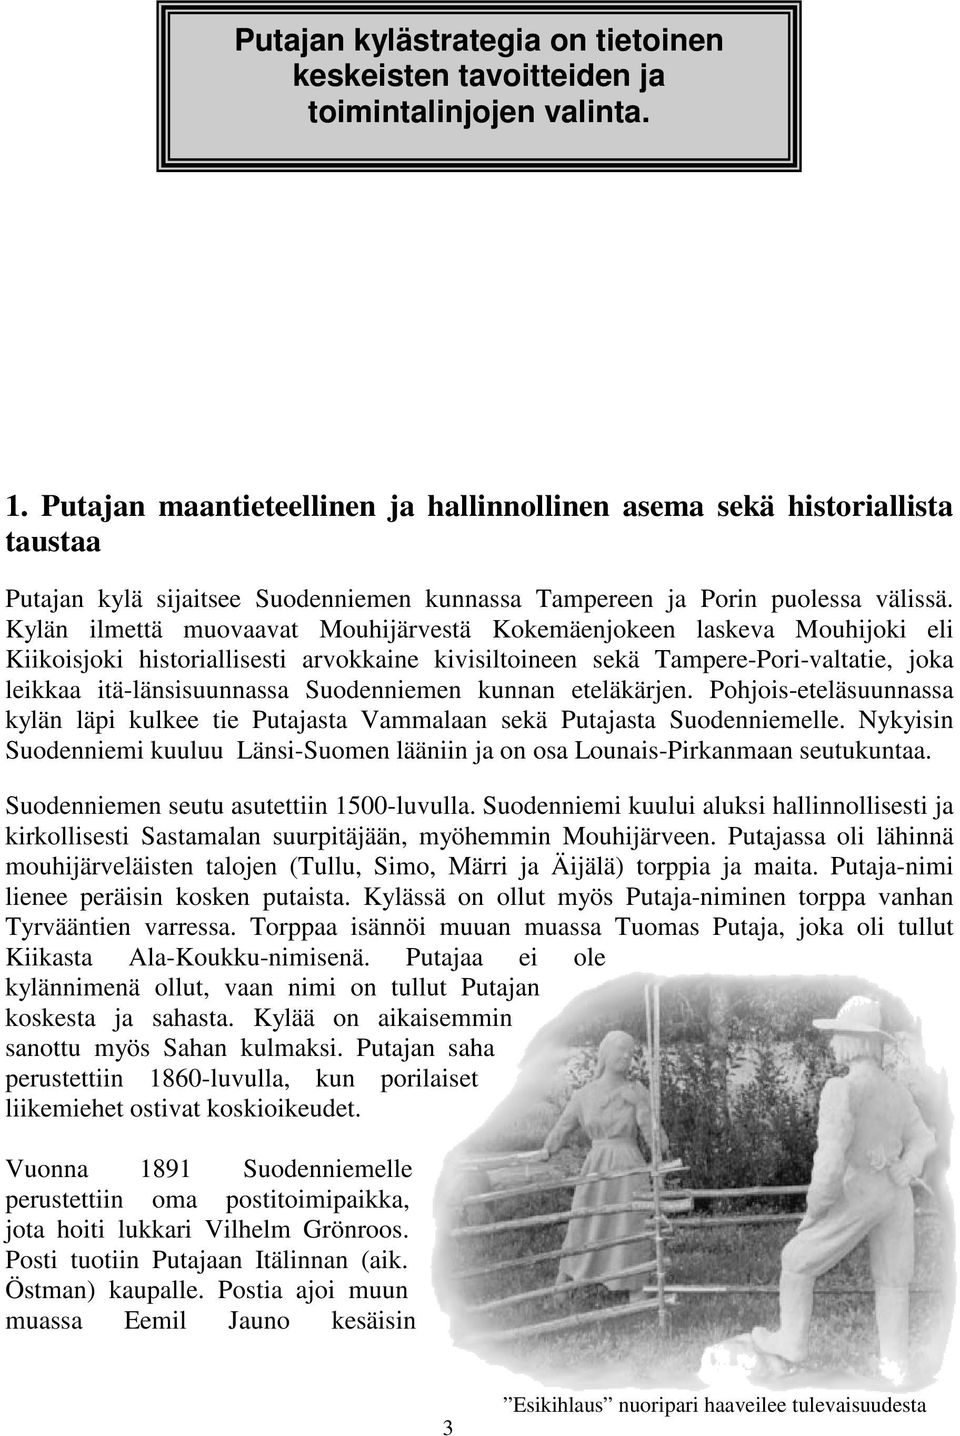 Kylän ilmettä muovaavat Mouhijärvestä Kokemäenjokeen laskeva Mouhijoki eli Kiikoisjoki historiallisesti arvokkaine kivisiltoineen sekä Tampere-Pori-valtatie, joka leikkaa itä-länsisuunnassa